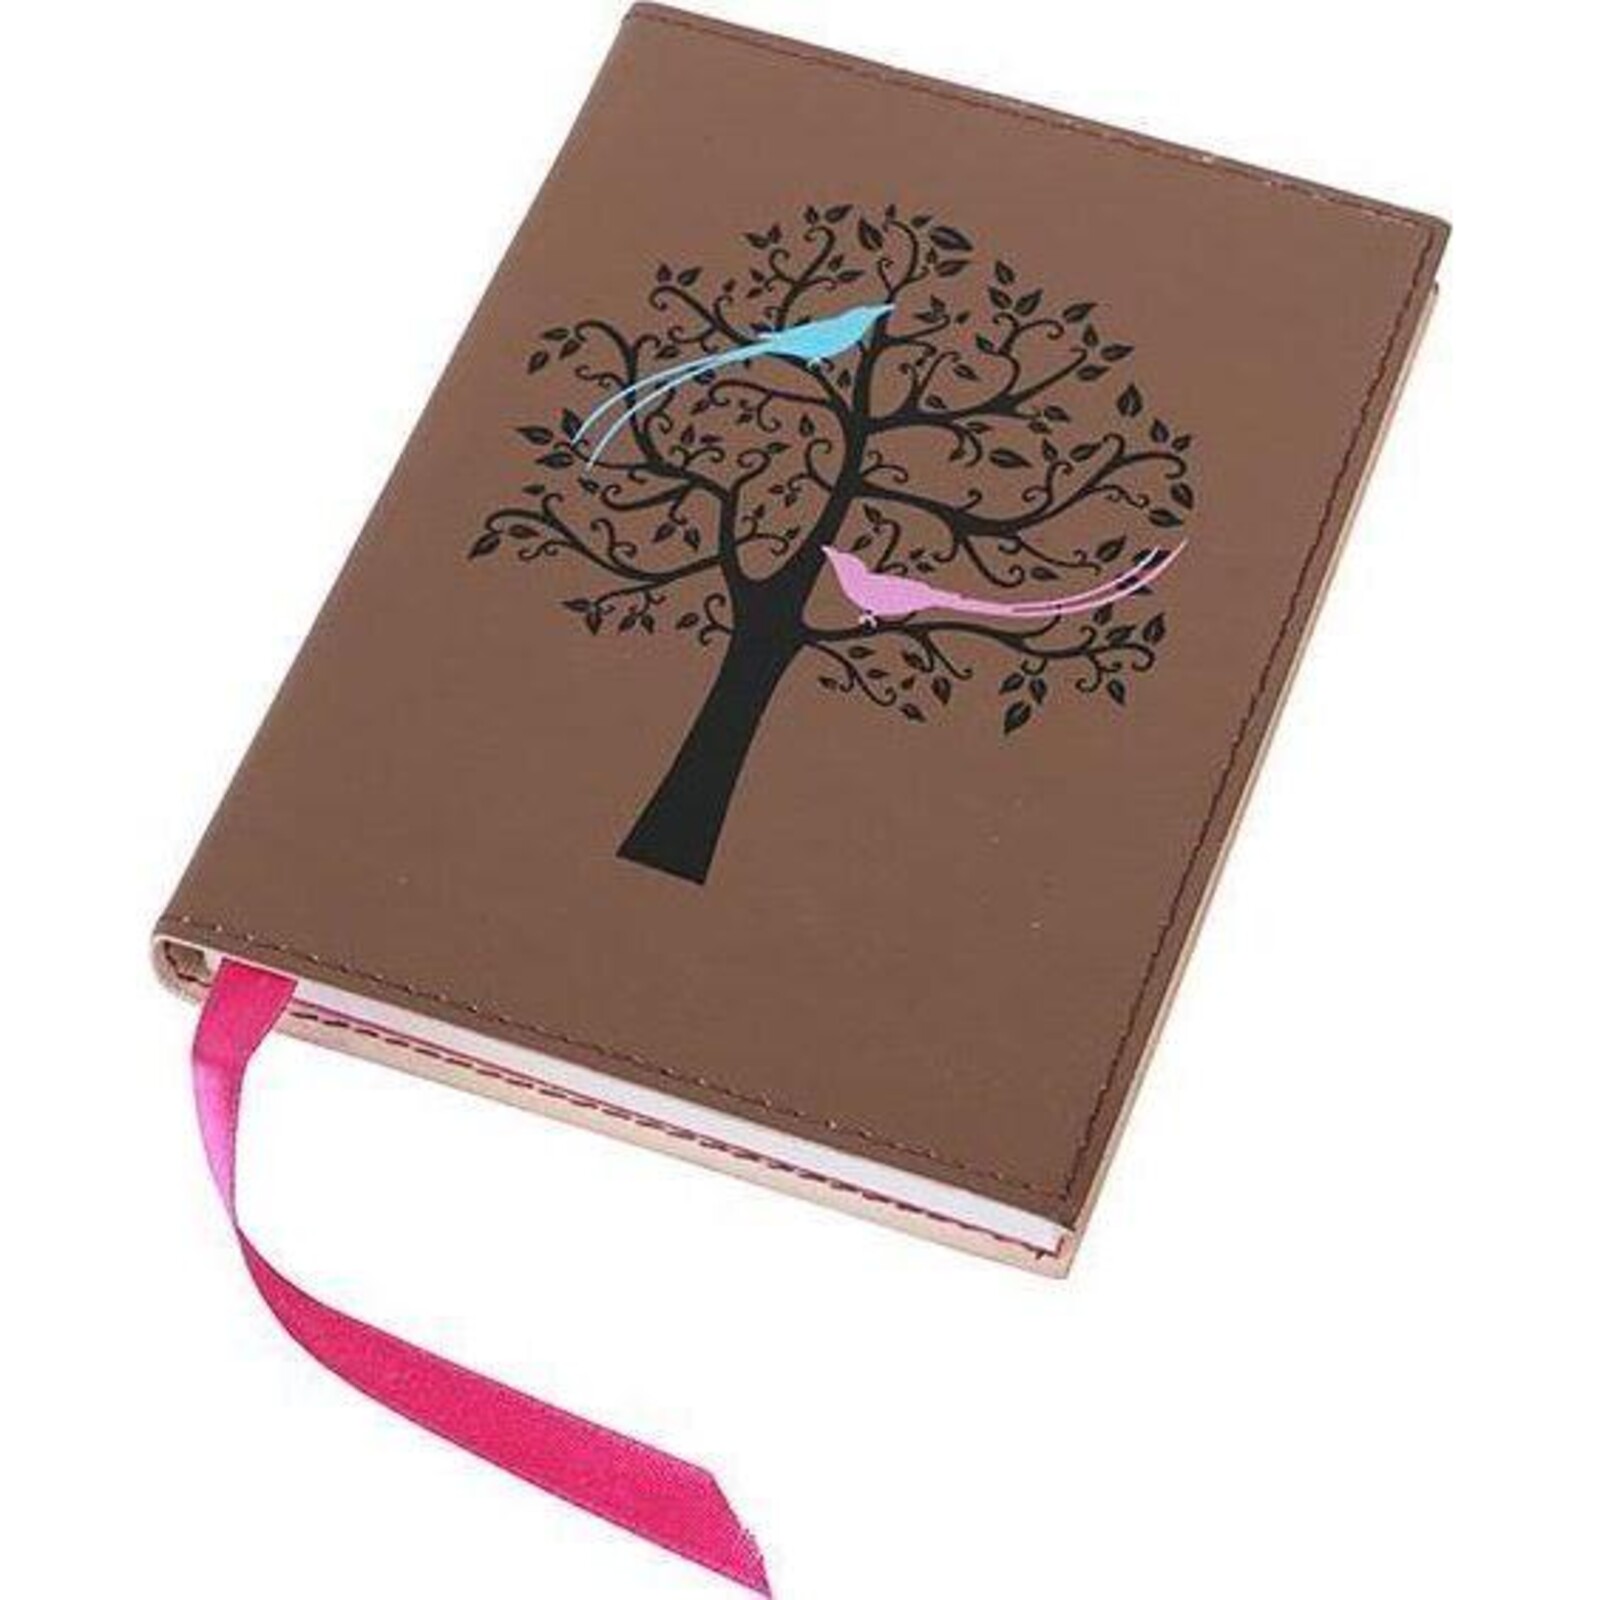 Leather Notebook Pajaro Tree